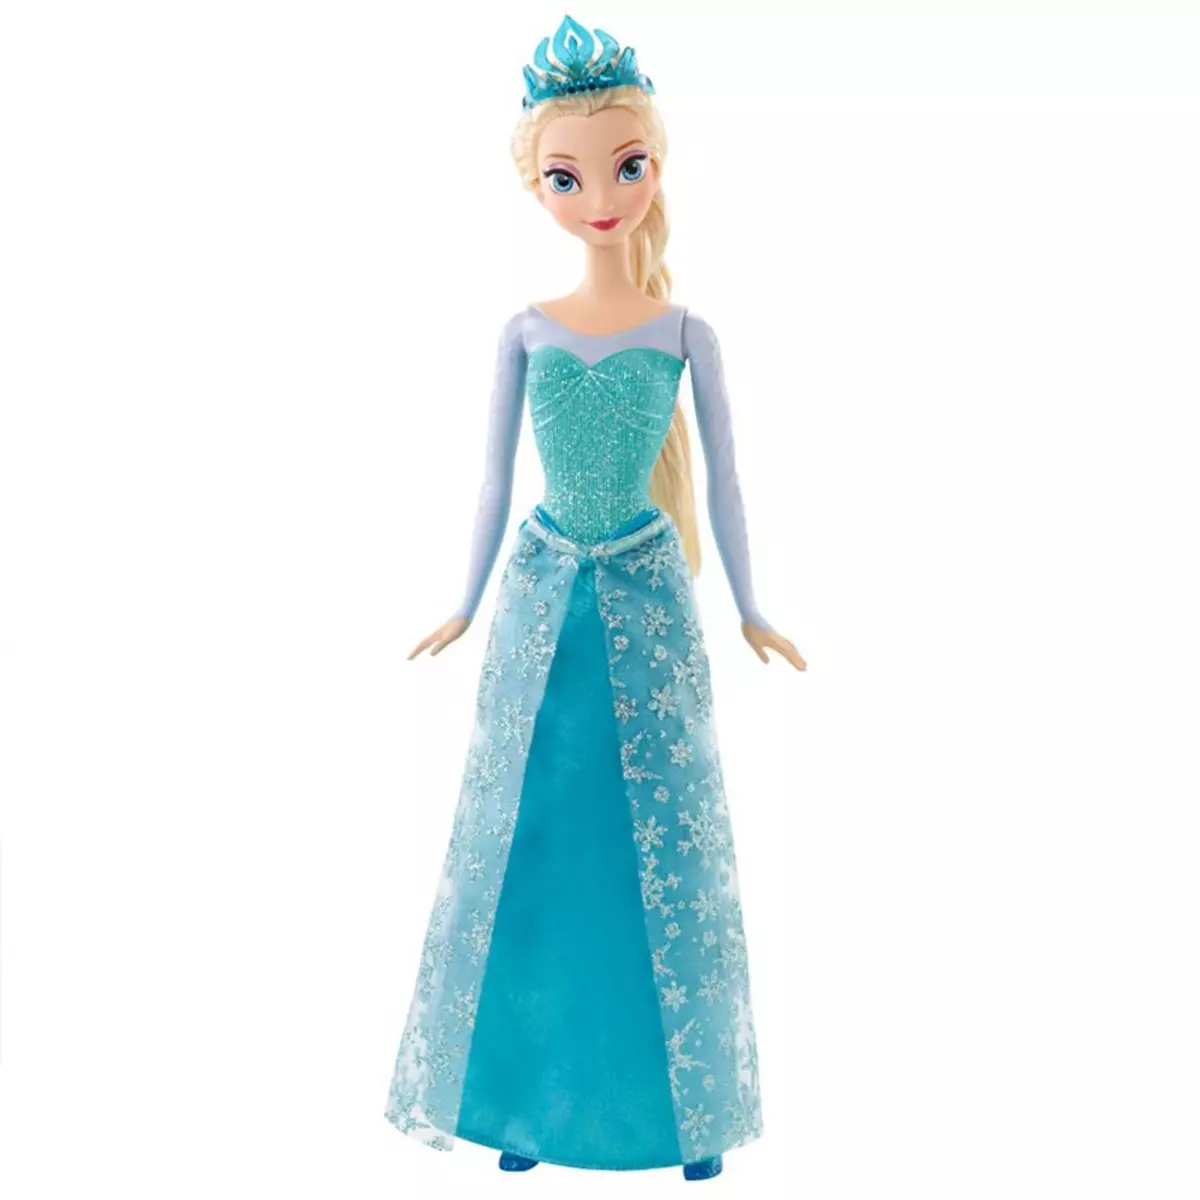 MATTEL Poupée Elsa paillettes La Reine des neiges